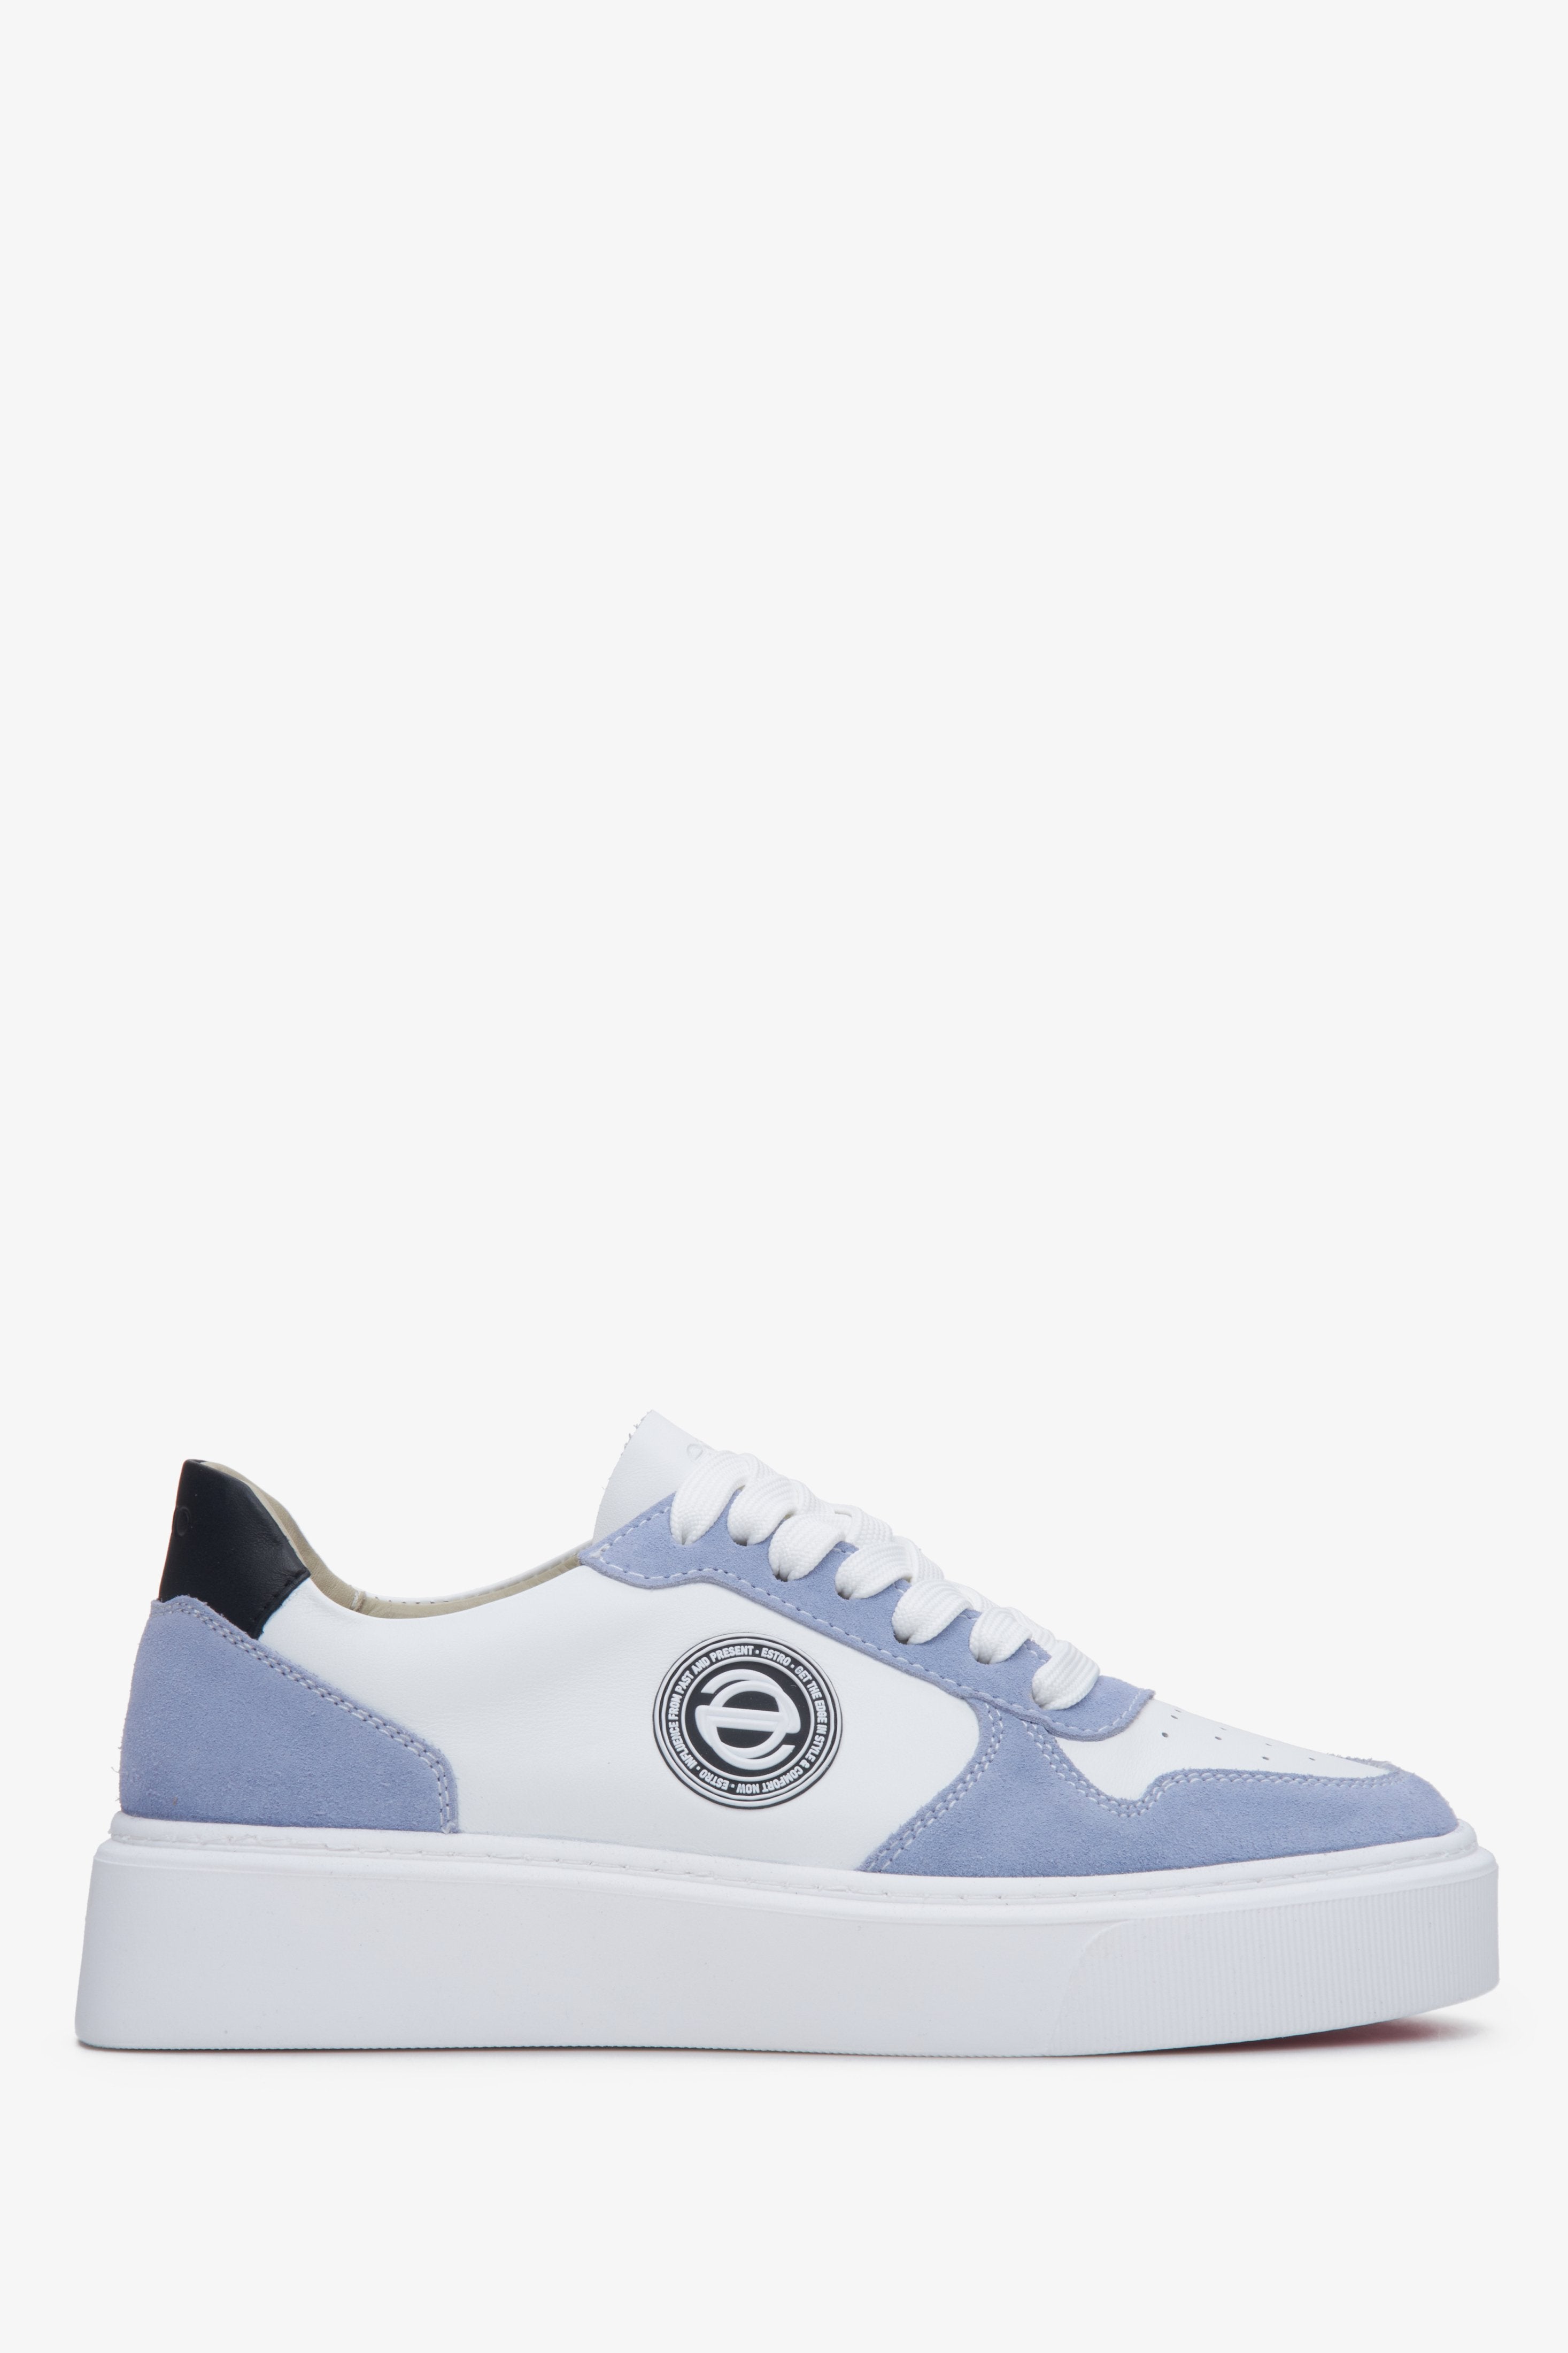 Niebiesko-białe sneakersy damskie ze skóry i weluru naturalnego Estro ER00113465